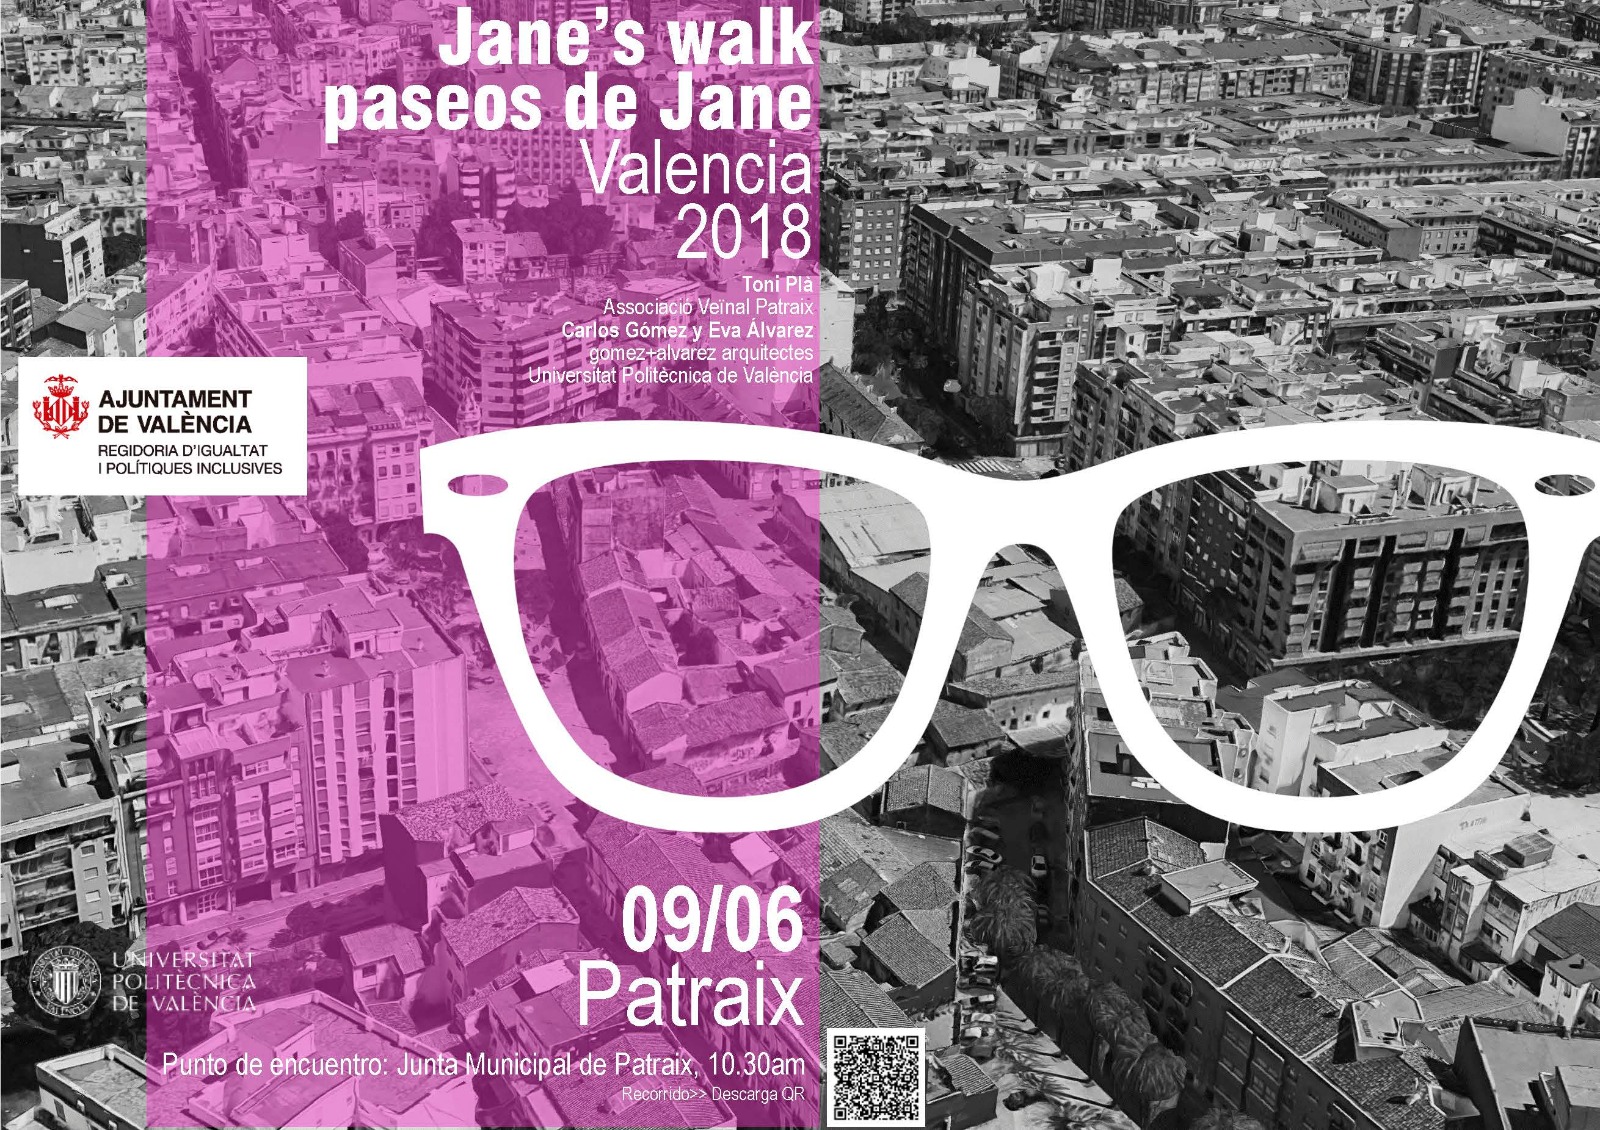 Paseo por Patraix “Jane’s walk” 9 de Junio